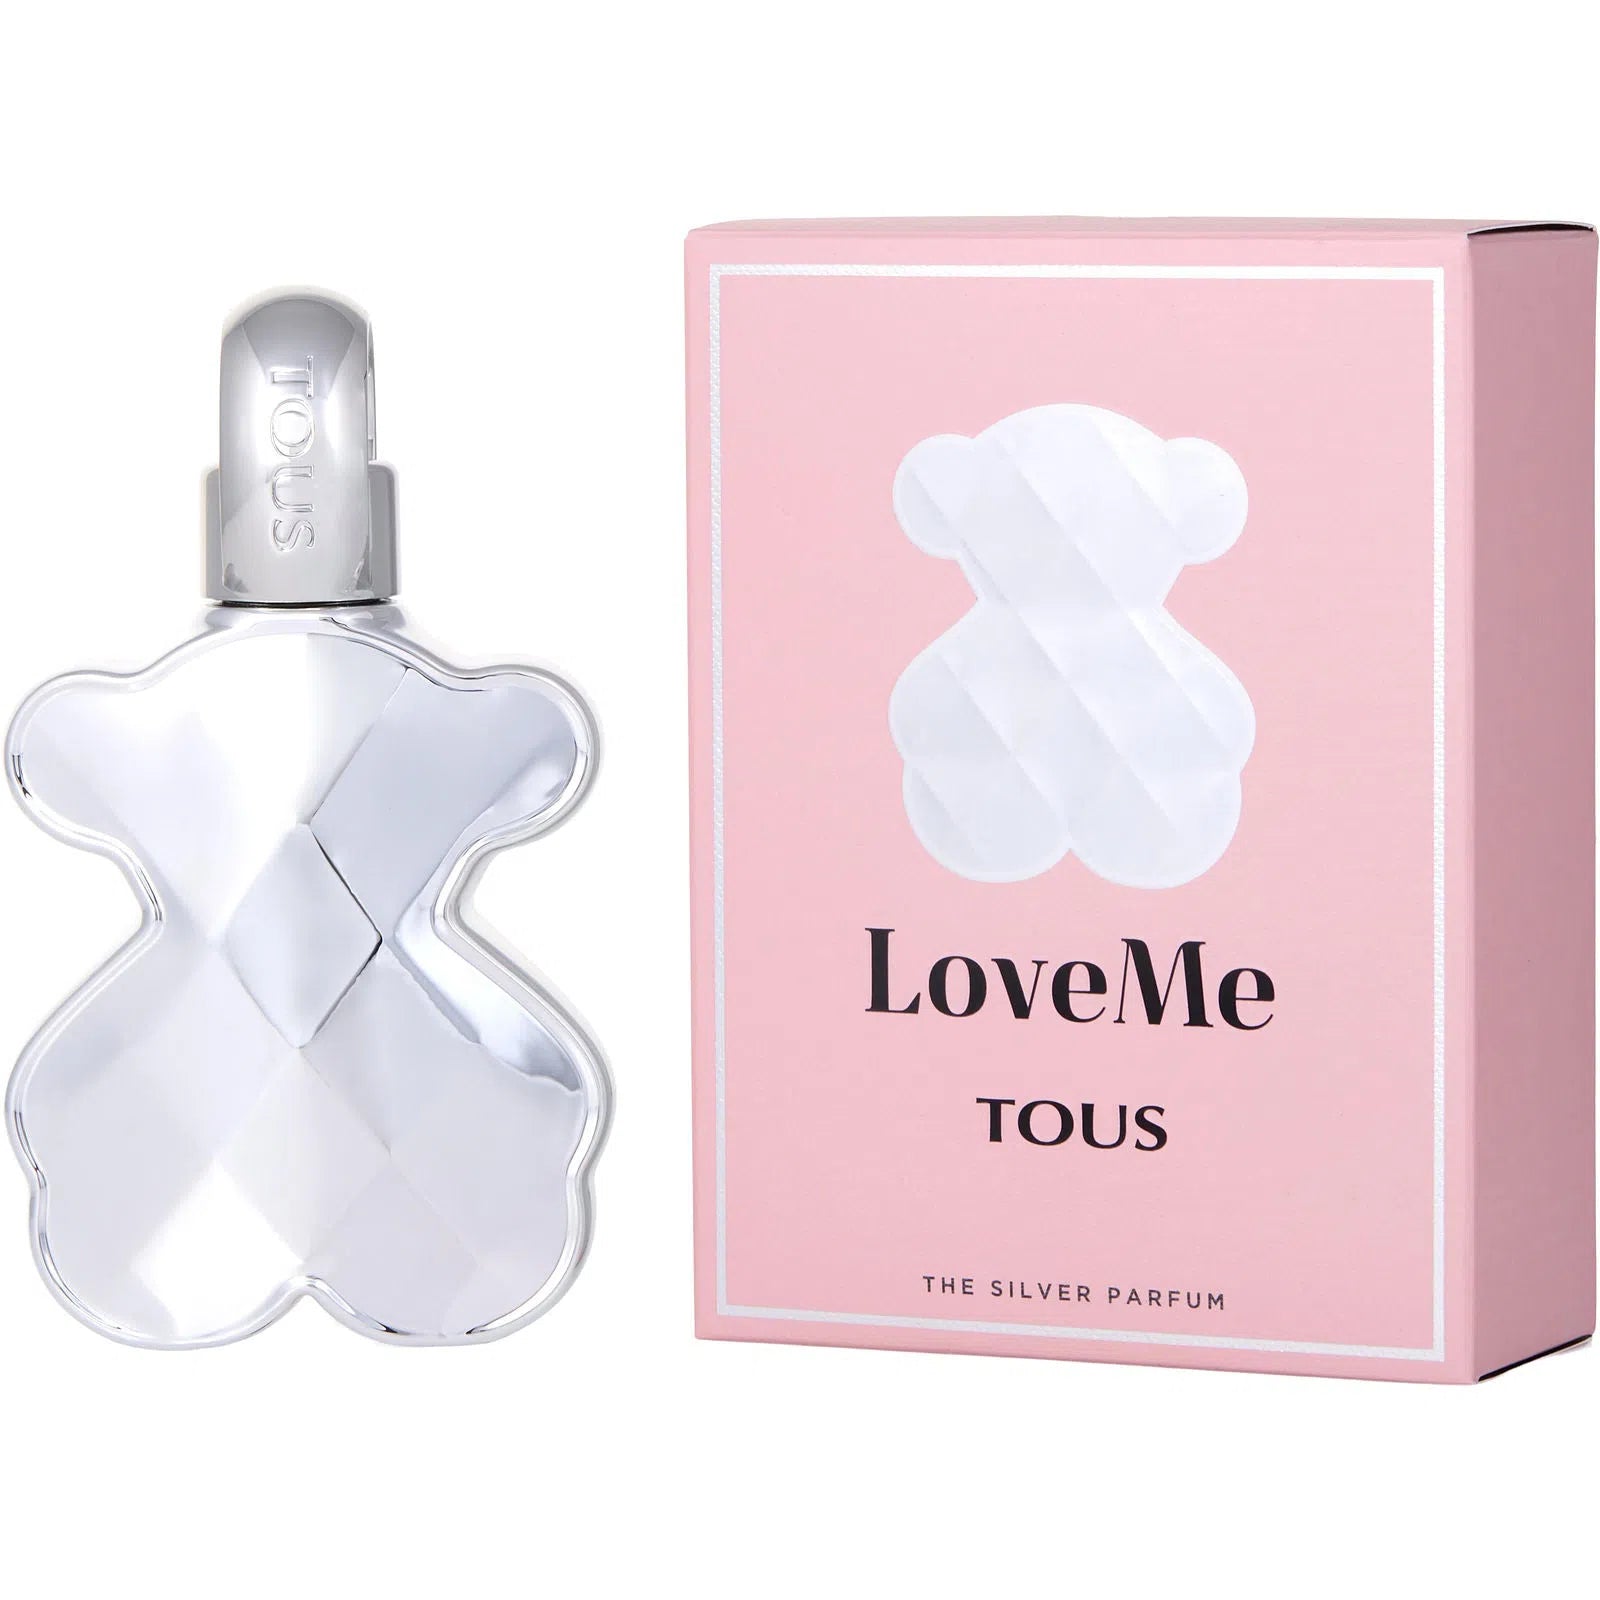 Perfume Tous LoveMe The Silver Parfum (W) / 90 ml - 8436550509847- Prive Perfumes Honduras